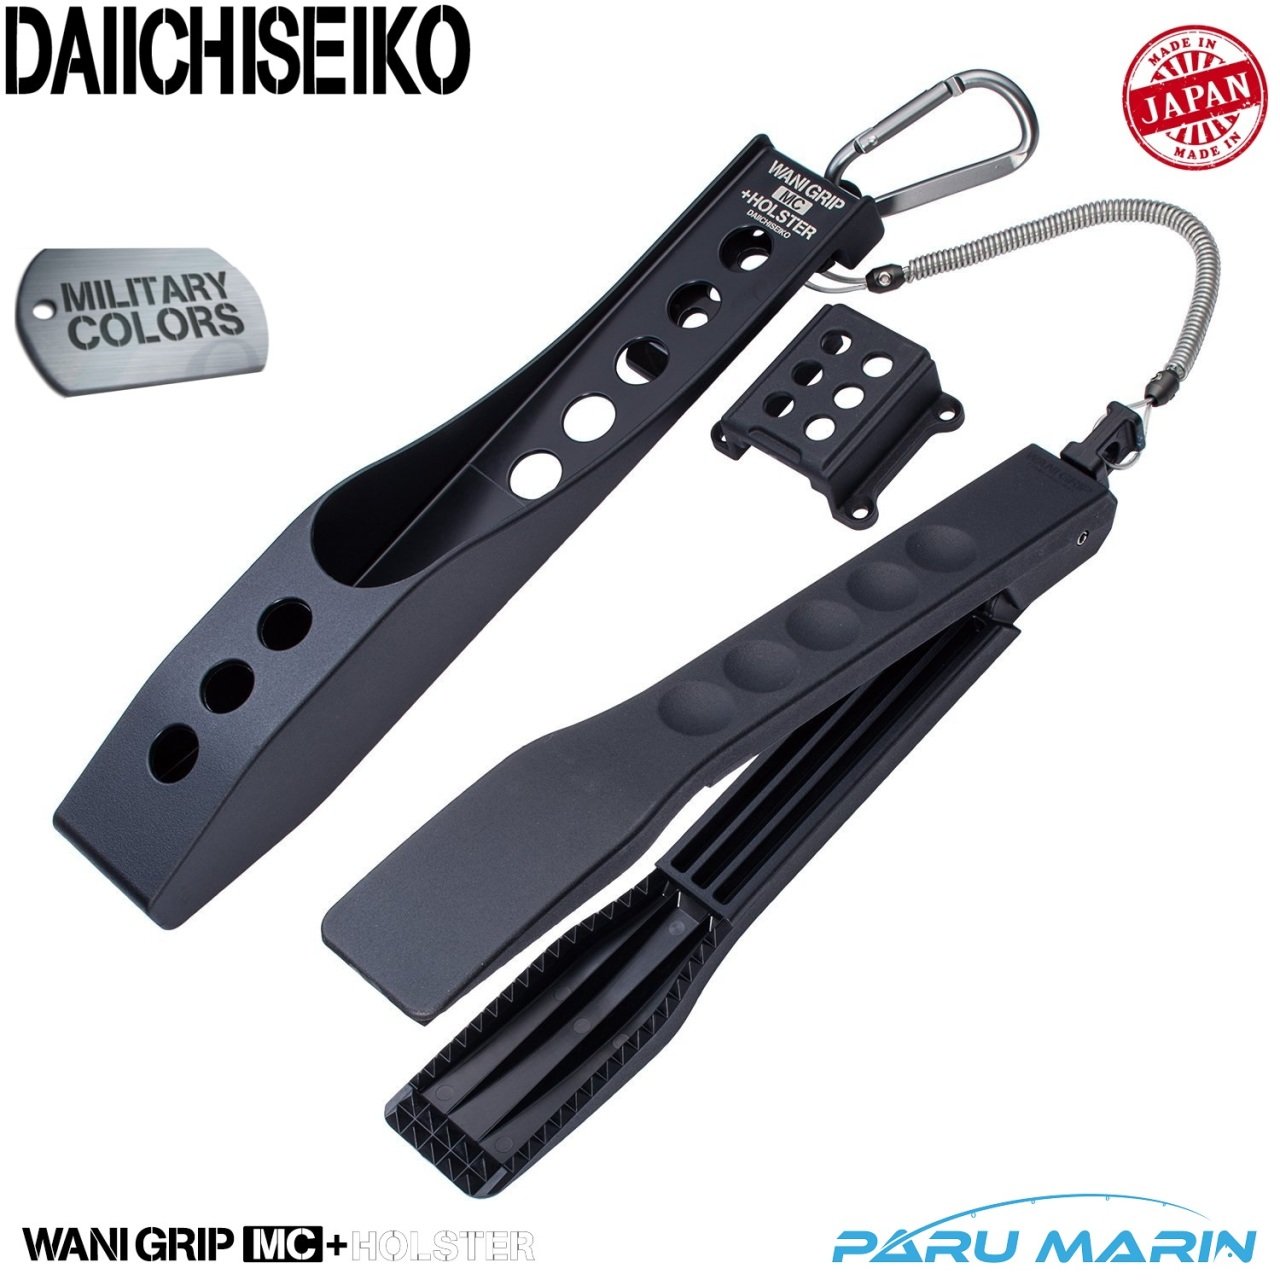 Daiichiseiko Wani Grip MC Balık Maşası 26 cm + Taşıma Kılıfı Black